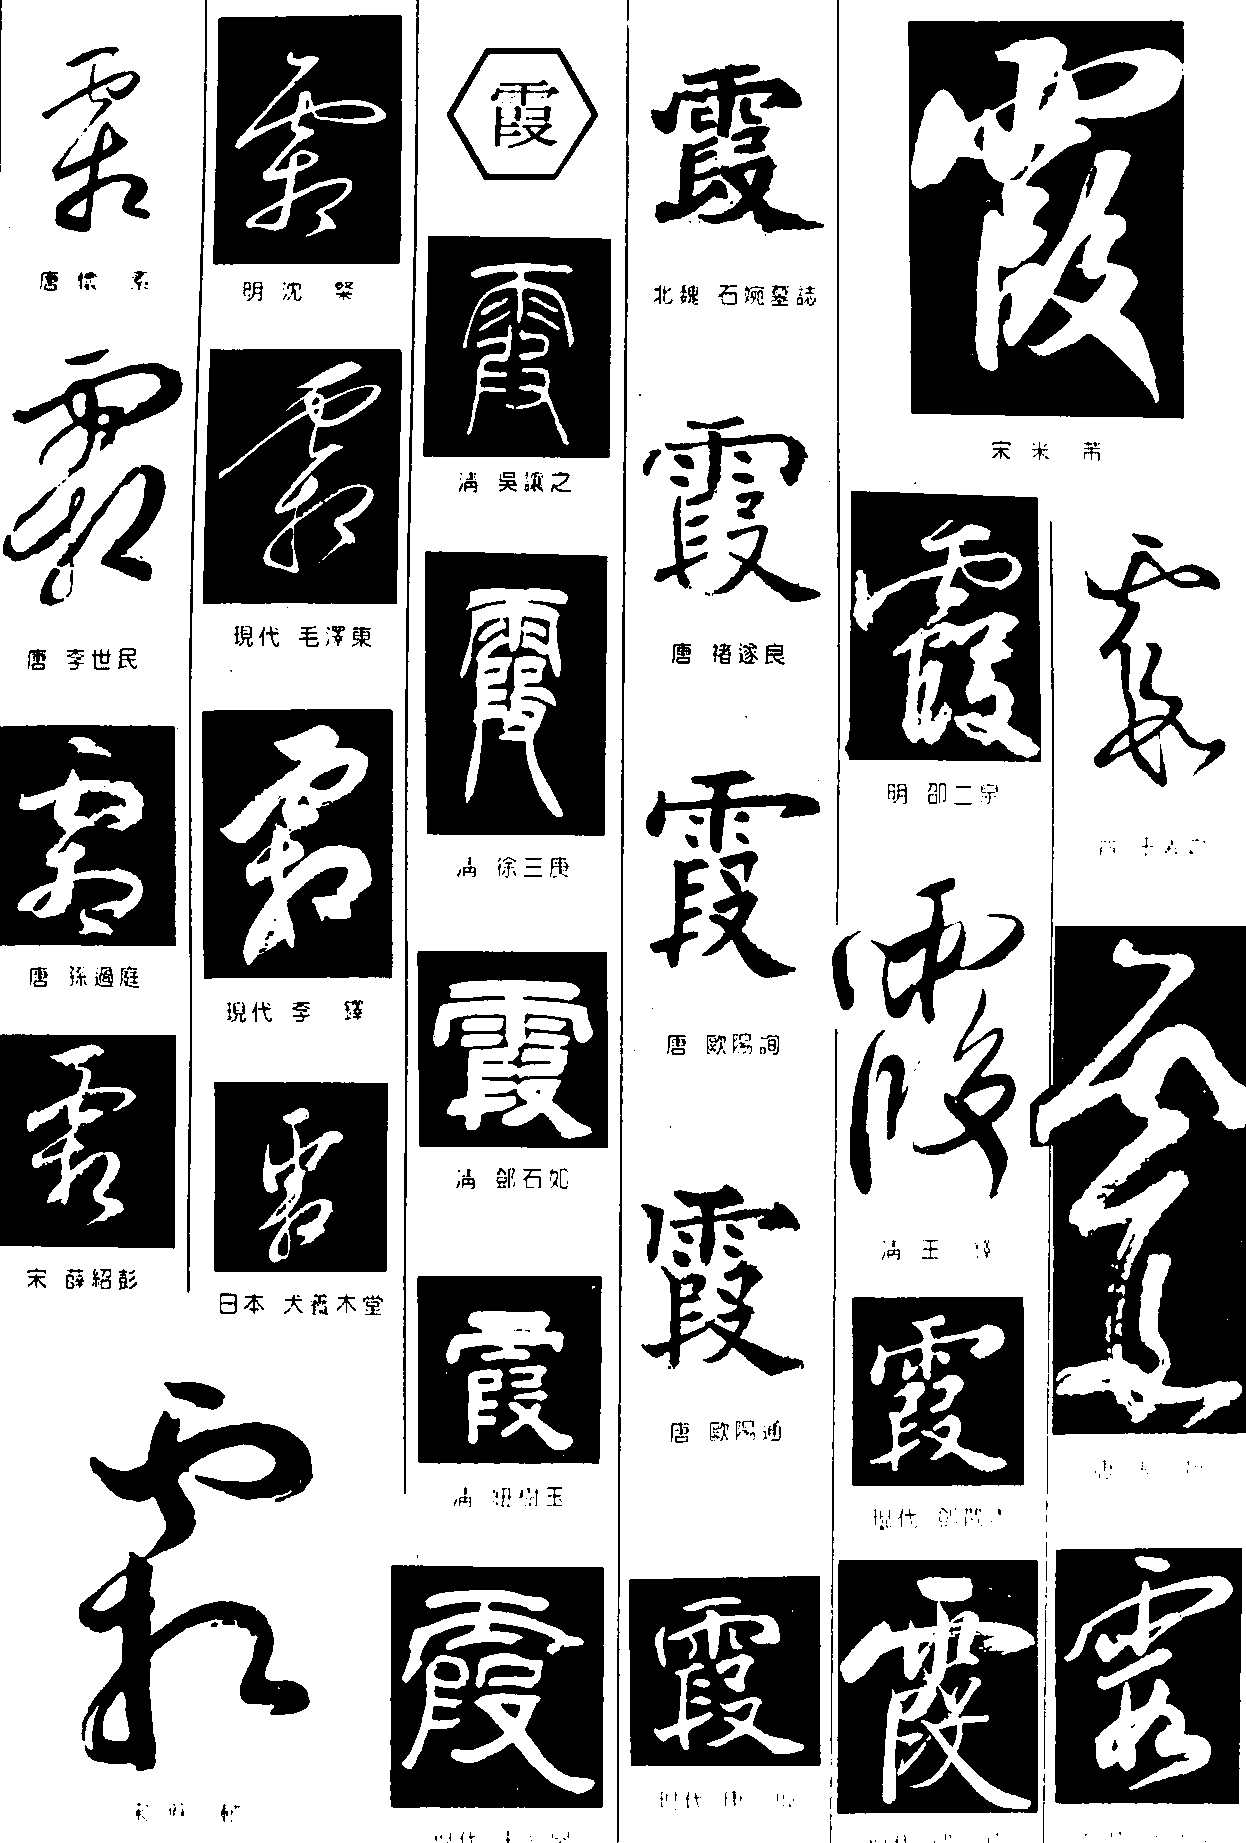 霜霞 艺术字 毛笔字 书法字 繁体 标志设计